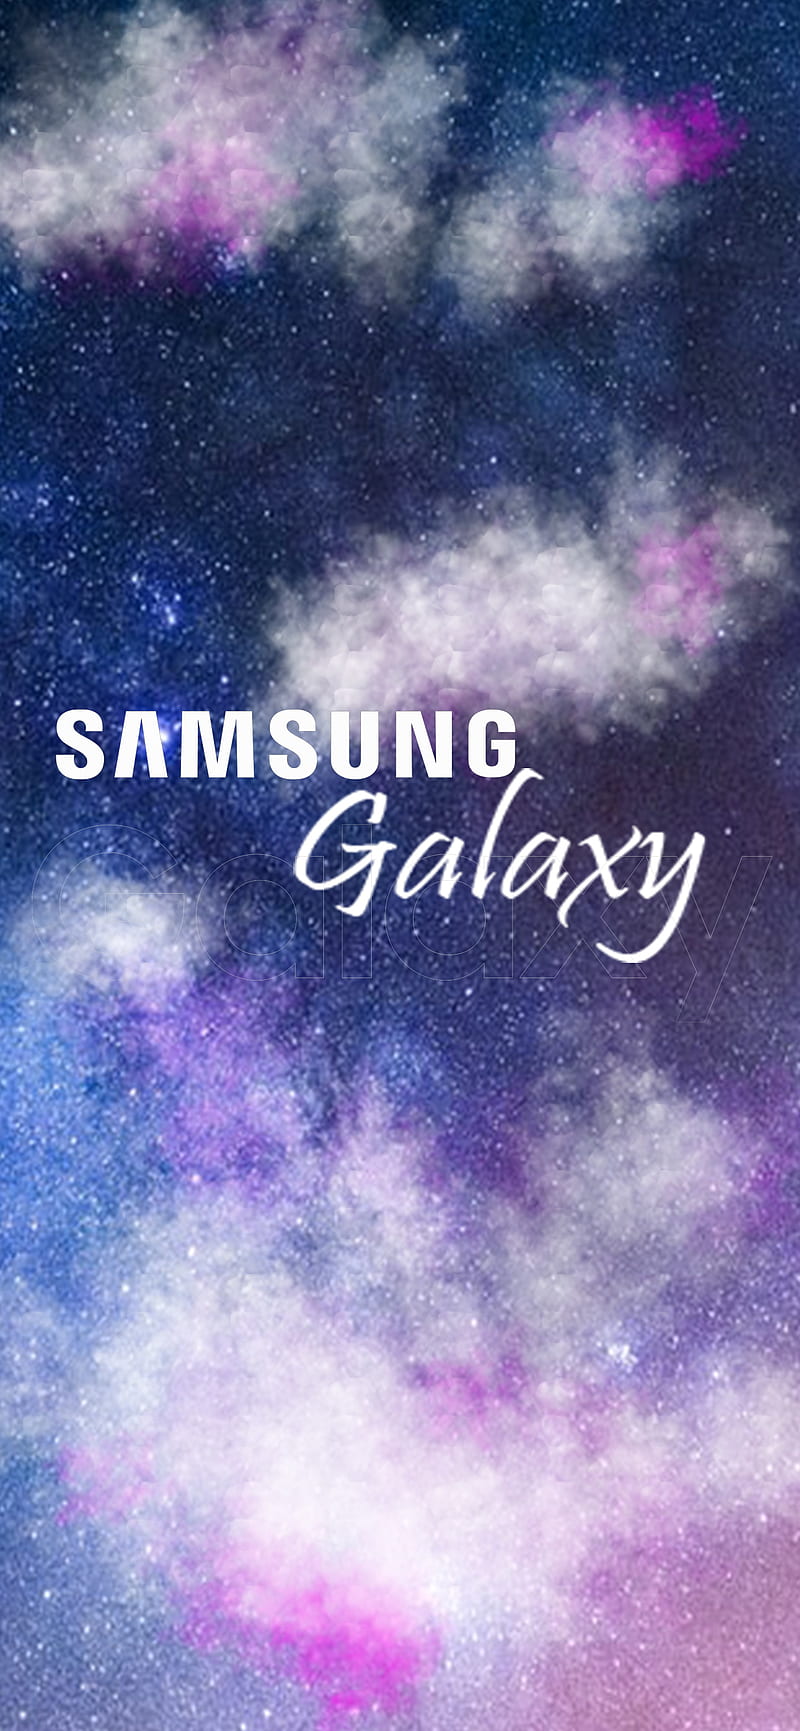 Khám phá những hình ảnh xinh đẹp nhất của bầu trời xanh, mây trắng, nắng vàng, cùng những điểm nhấn màu hồng tươi sáng trên điện thoại Samsung Galaxy của bạn. Vui lòng truy cập xem hình ảnh để tận hưởng không khí tươi mới của ngày mới.